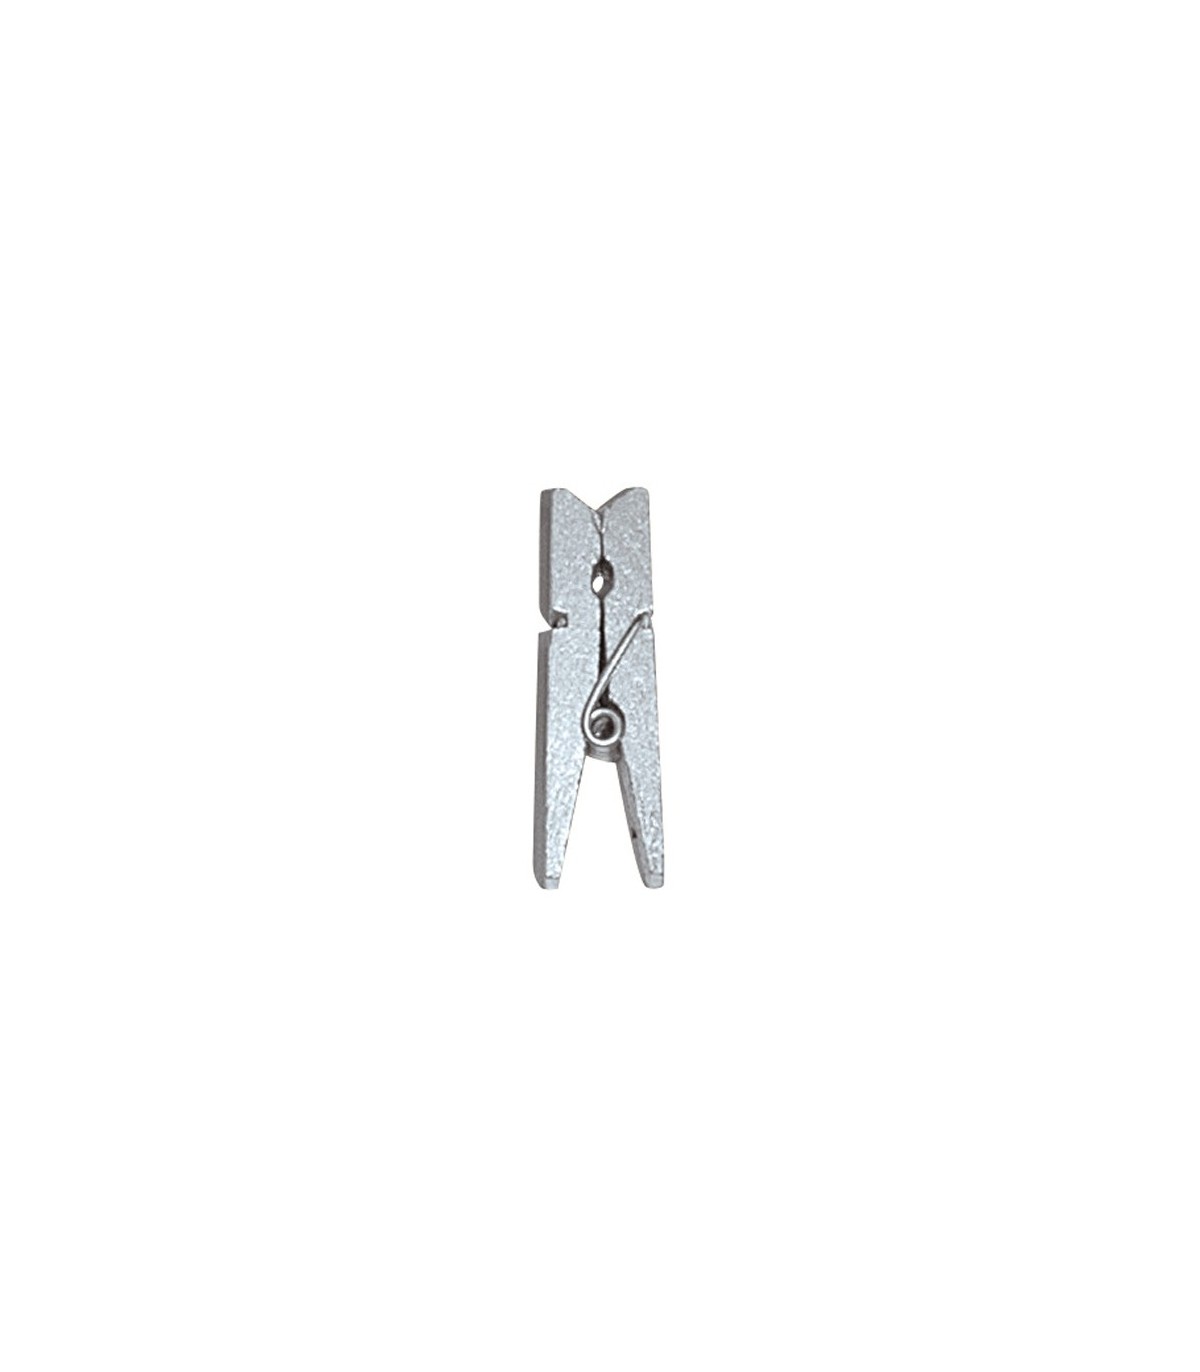 Pinces à linge plastique x20 — Linge, Pinces à linge & accessoires